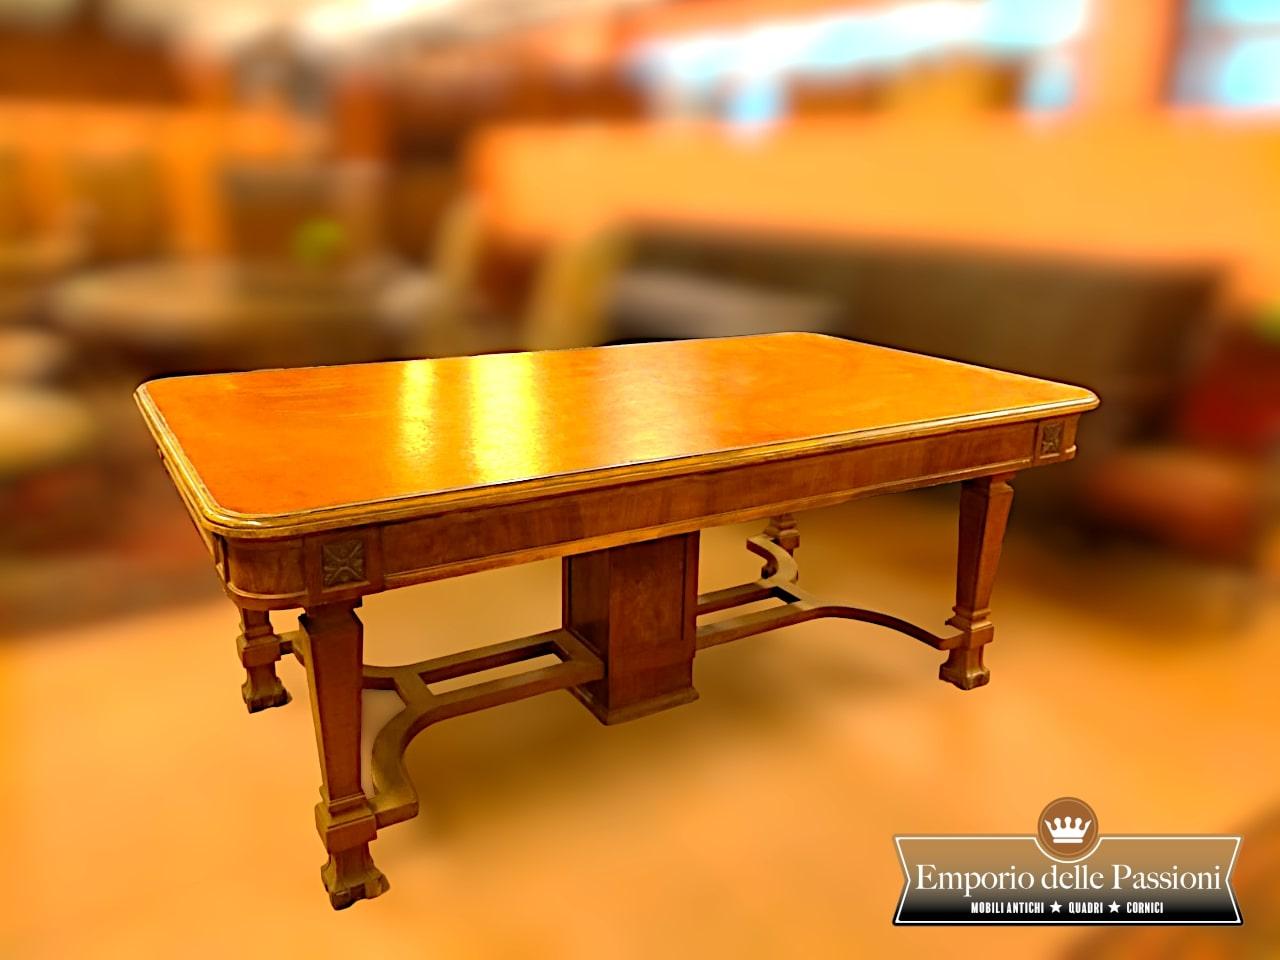 Großer eklektischer Liberty-Tisch

Dieser große eklektische Liberty-Tisch ist eine elegante Ergänzung für jeden Wohnraum. Es weist unverwechselbare Stilelemente auf, die sowohl den Jugendstil als auch das Art Déco und den Neoklassizismus